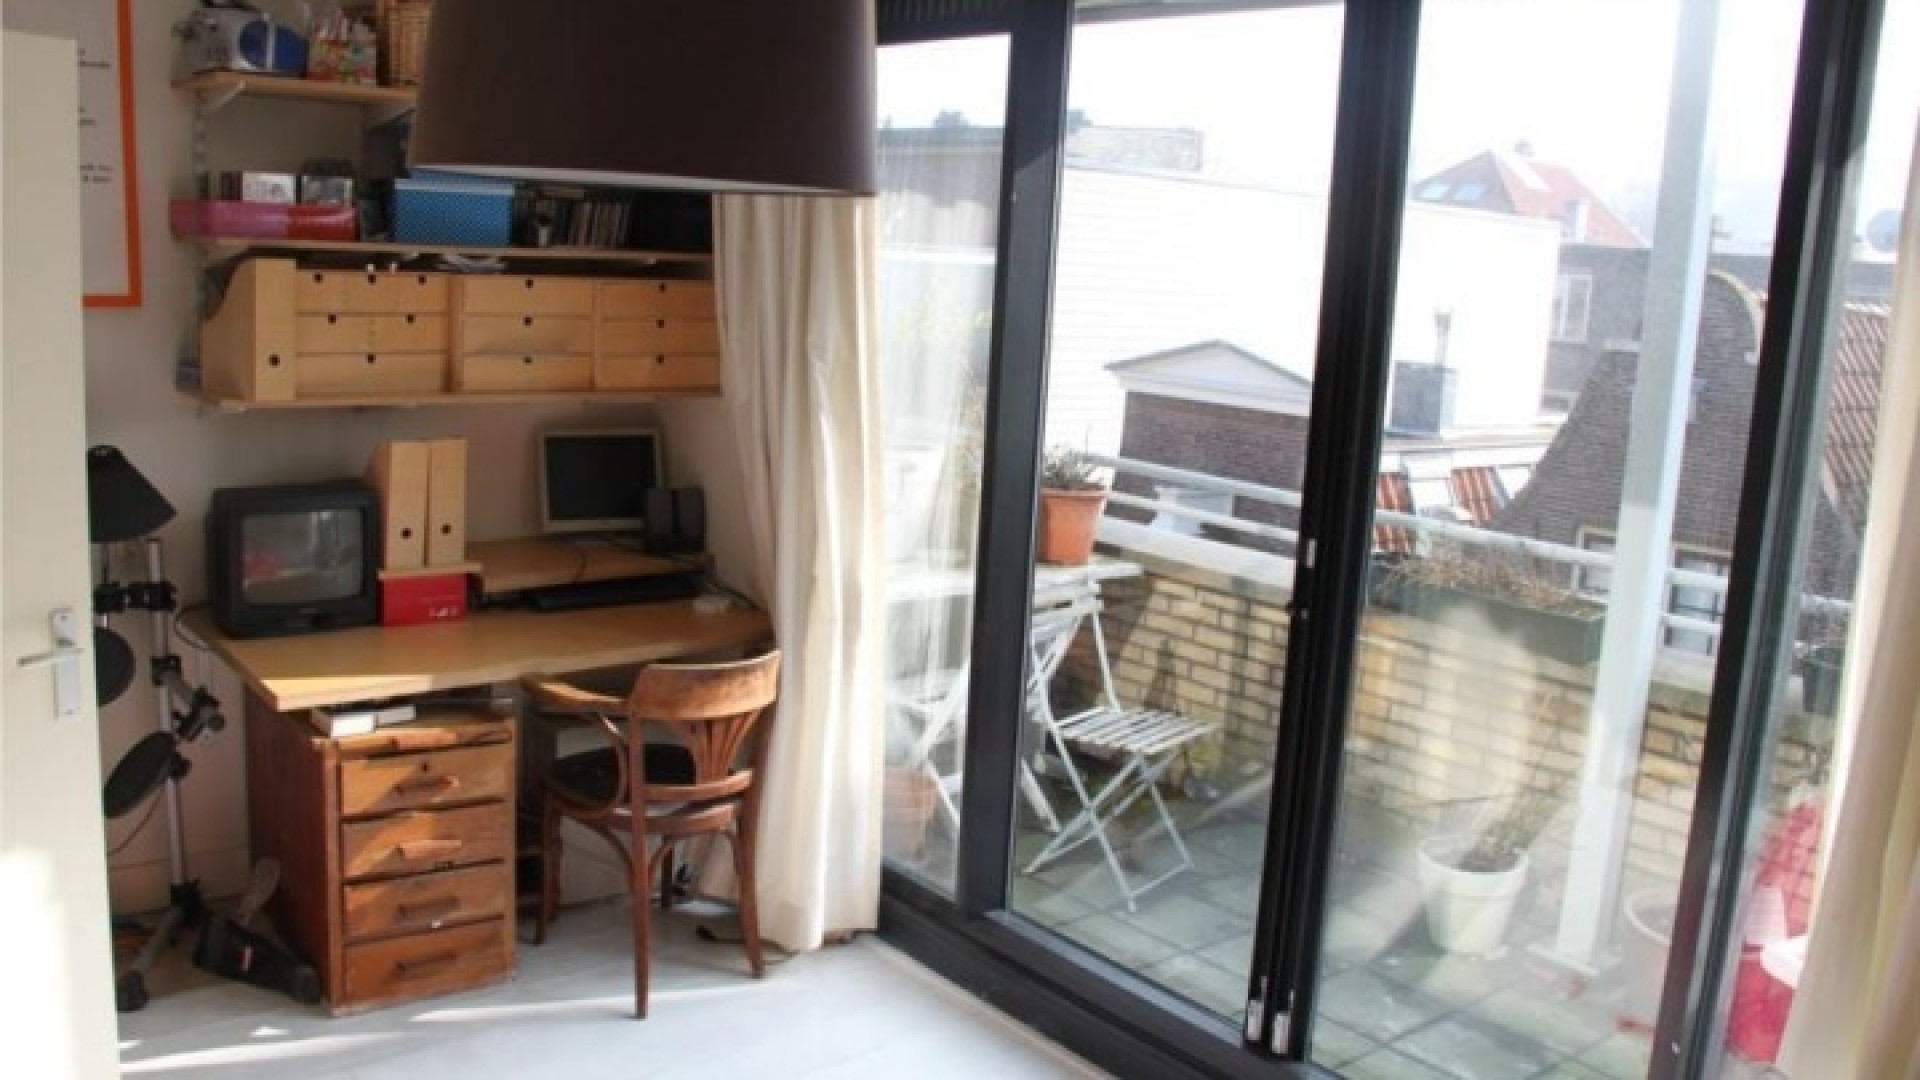 Frank Evenblij haalt zijn huis in de Amsterdamse Jordaan uit de verkoop. Zie foto's 15